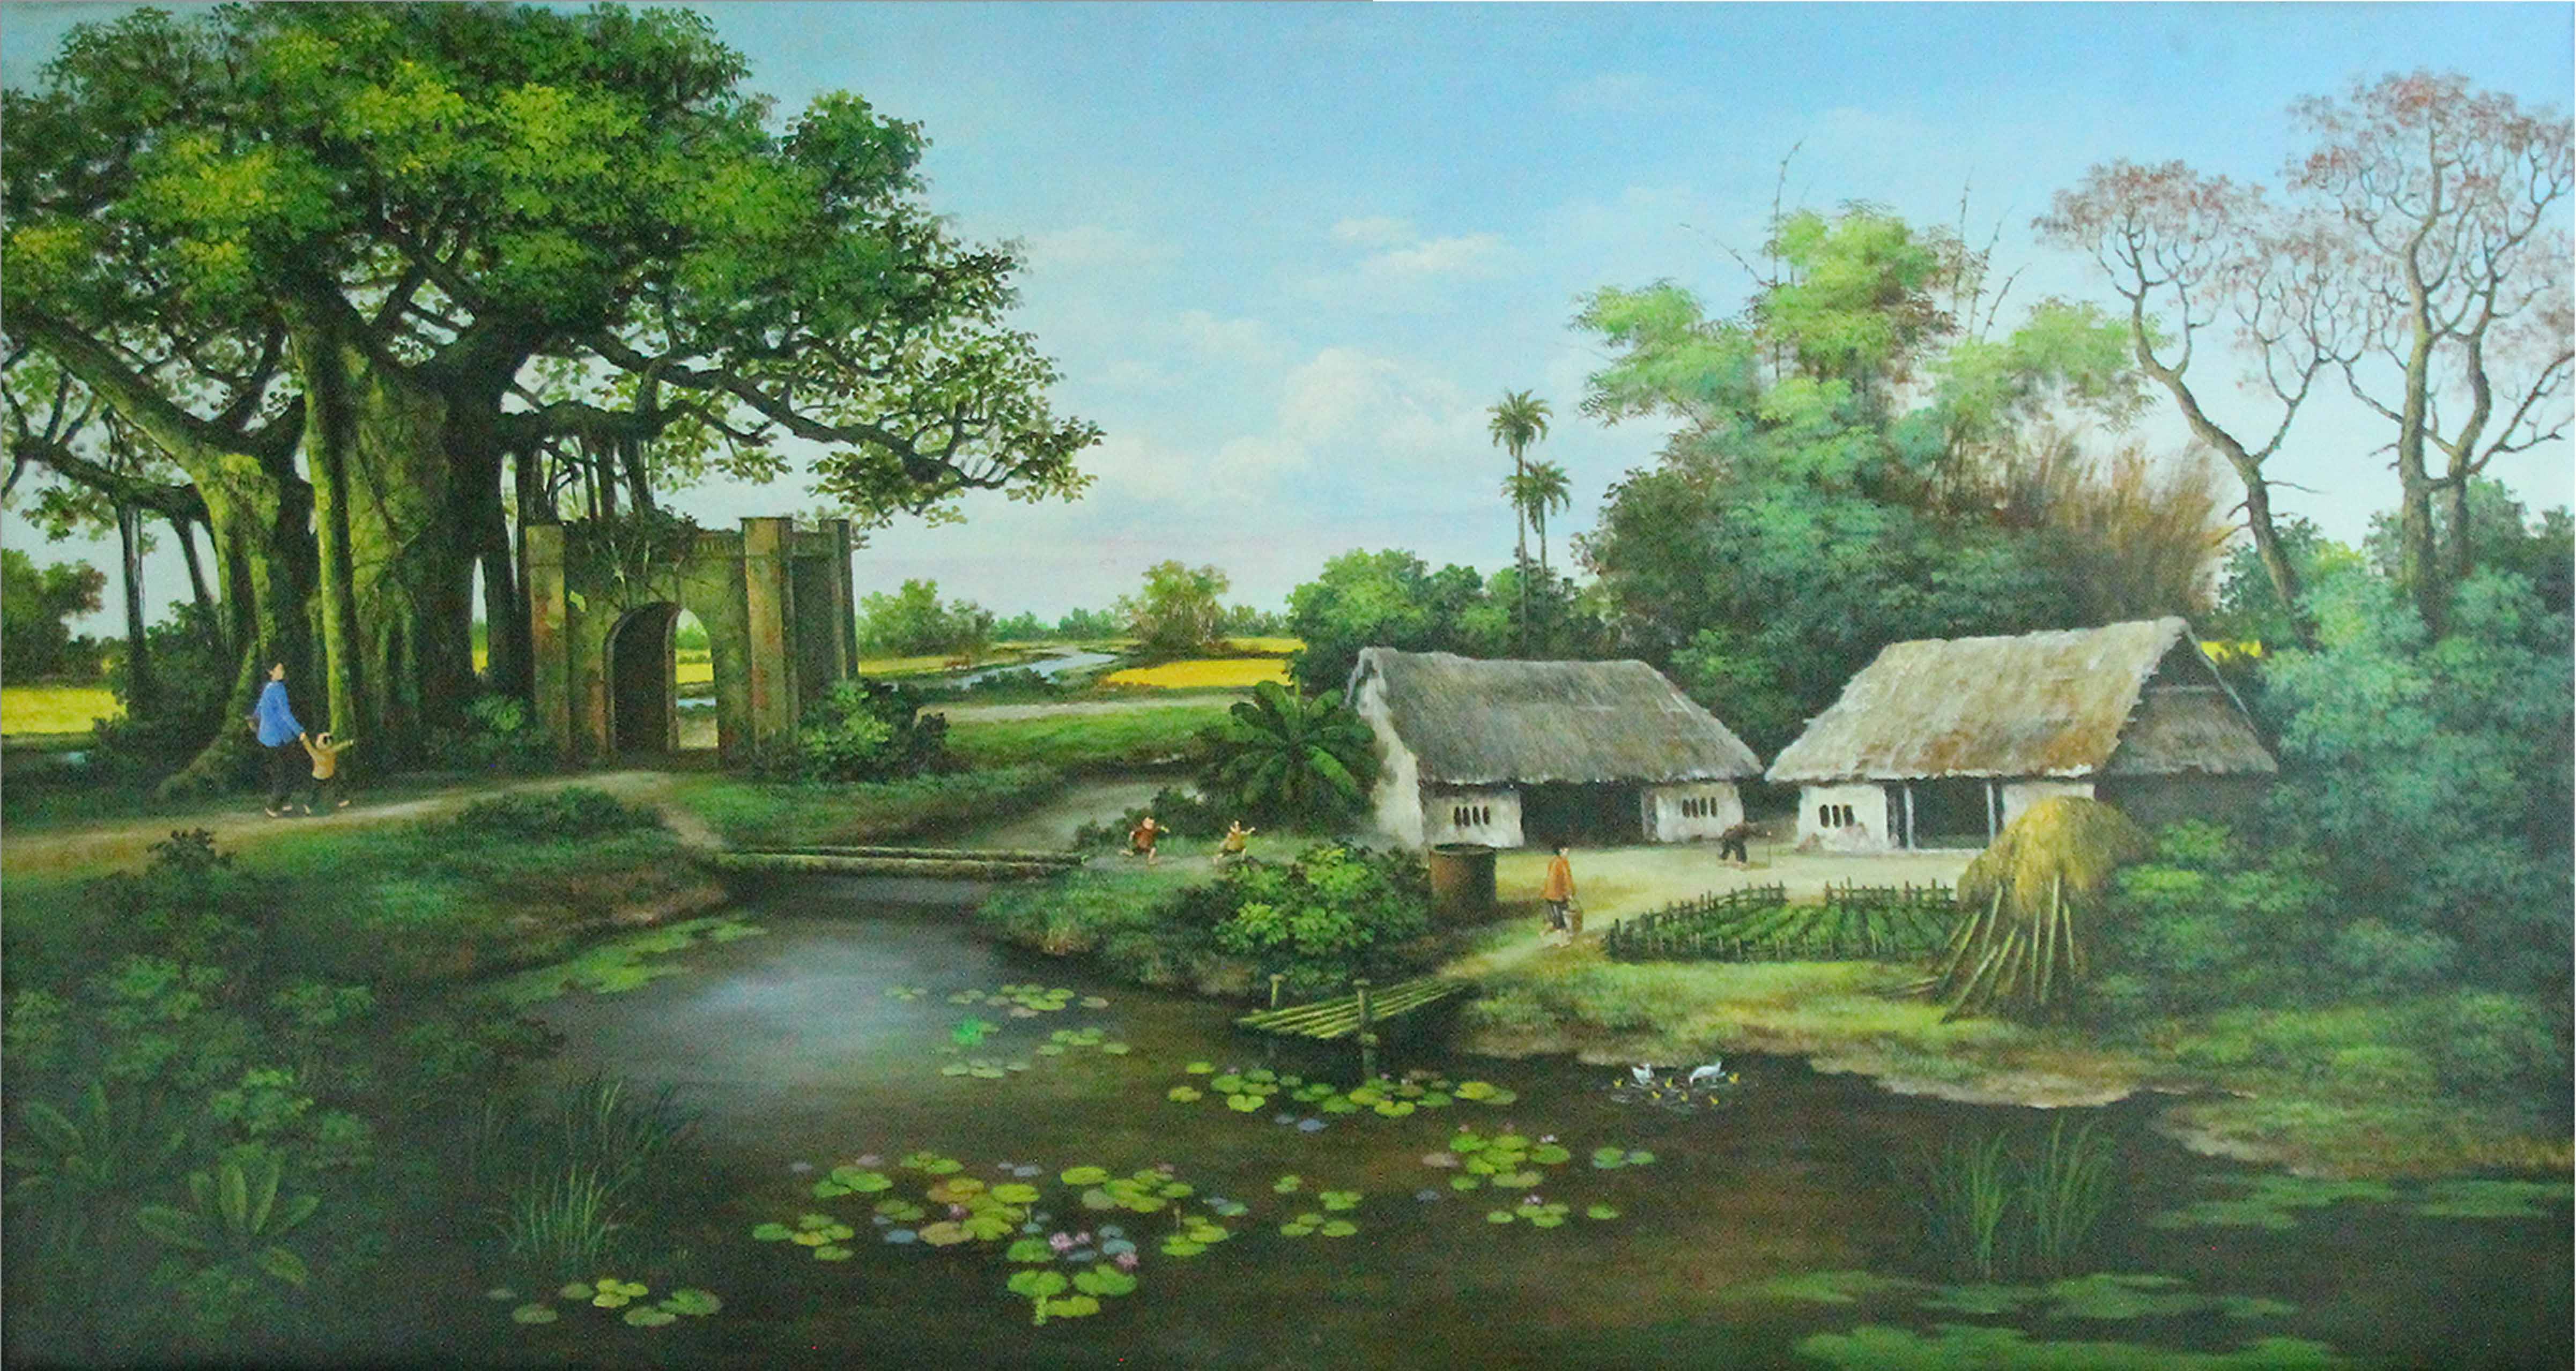 Tranh sơn dầu phong cảnh làng quê Việt nam - TSD23LHAR